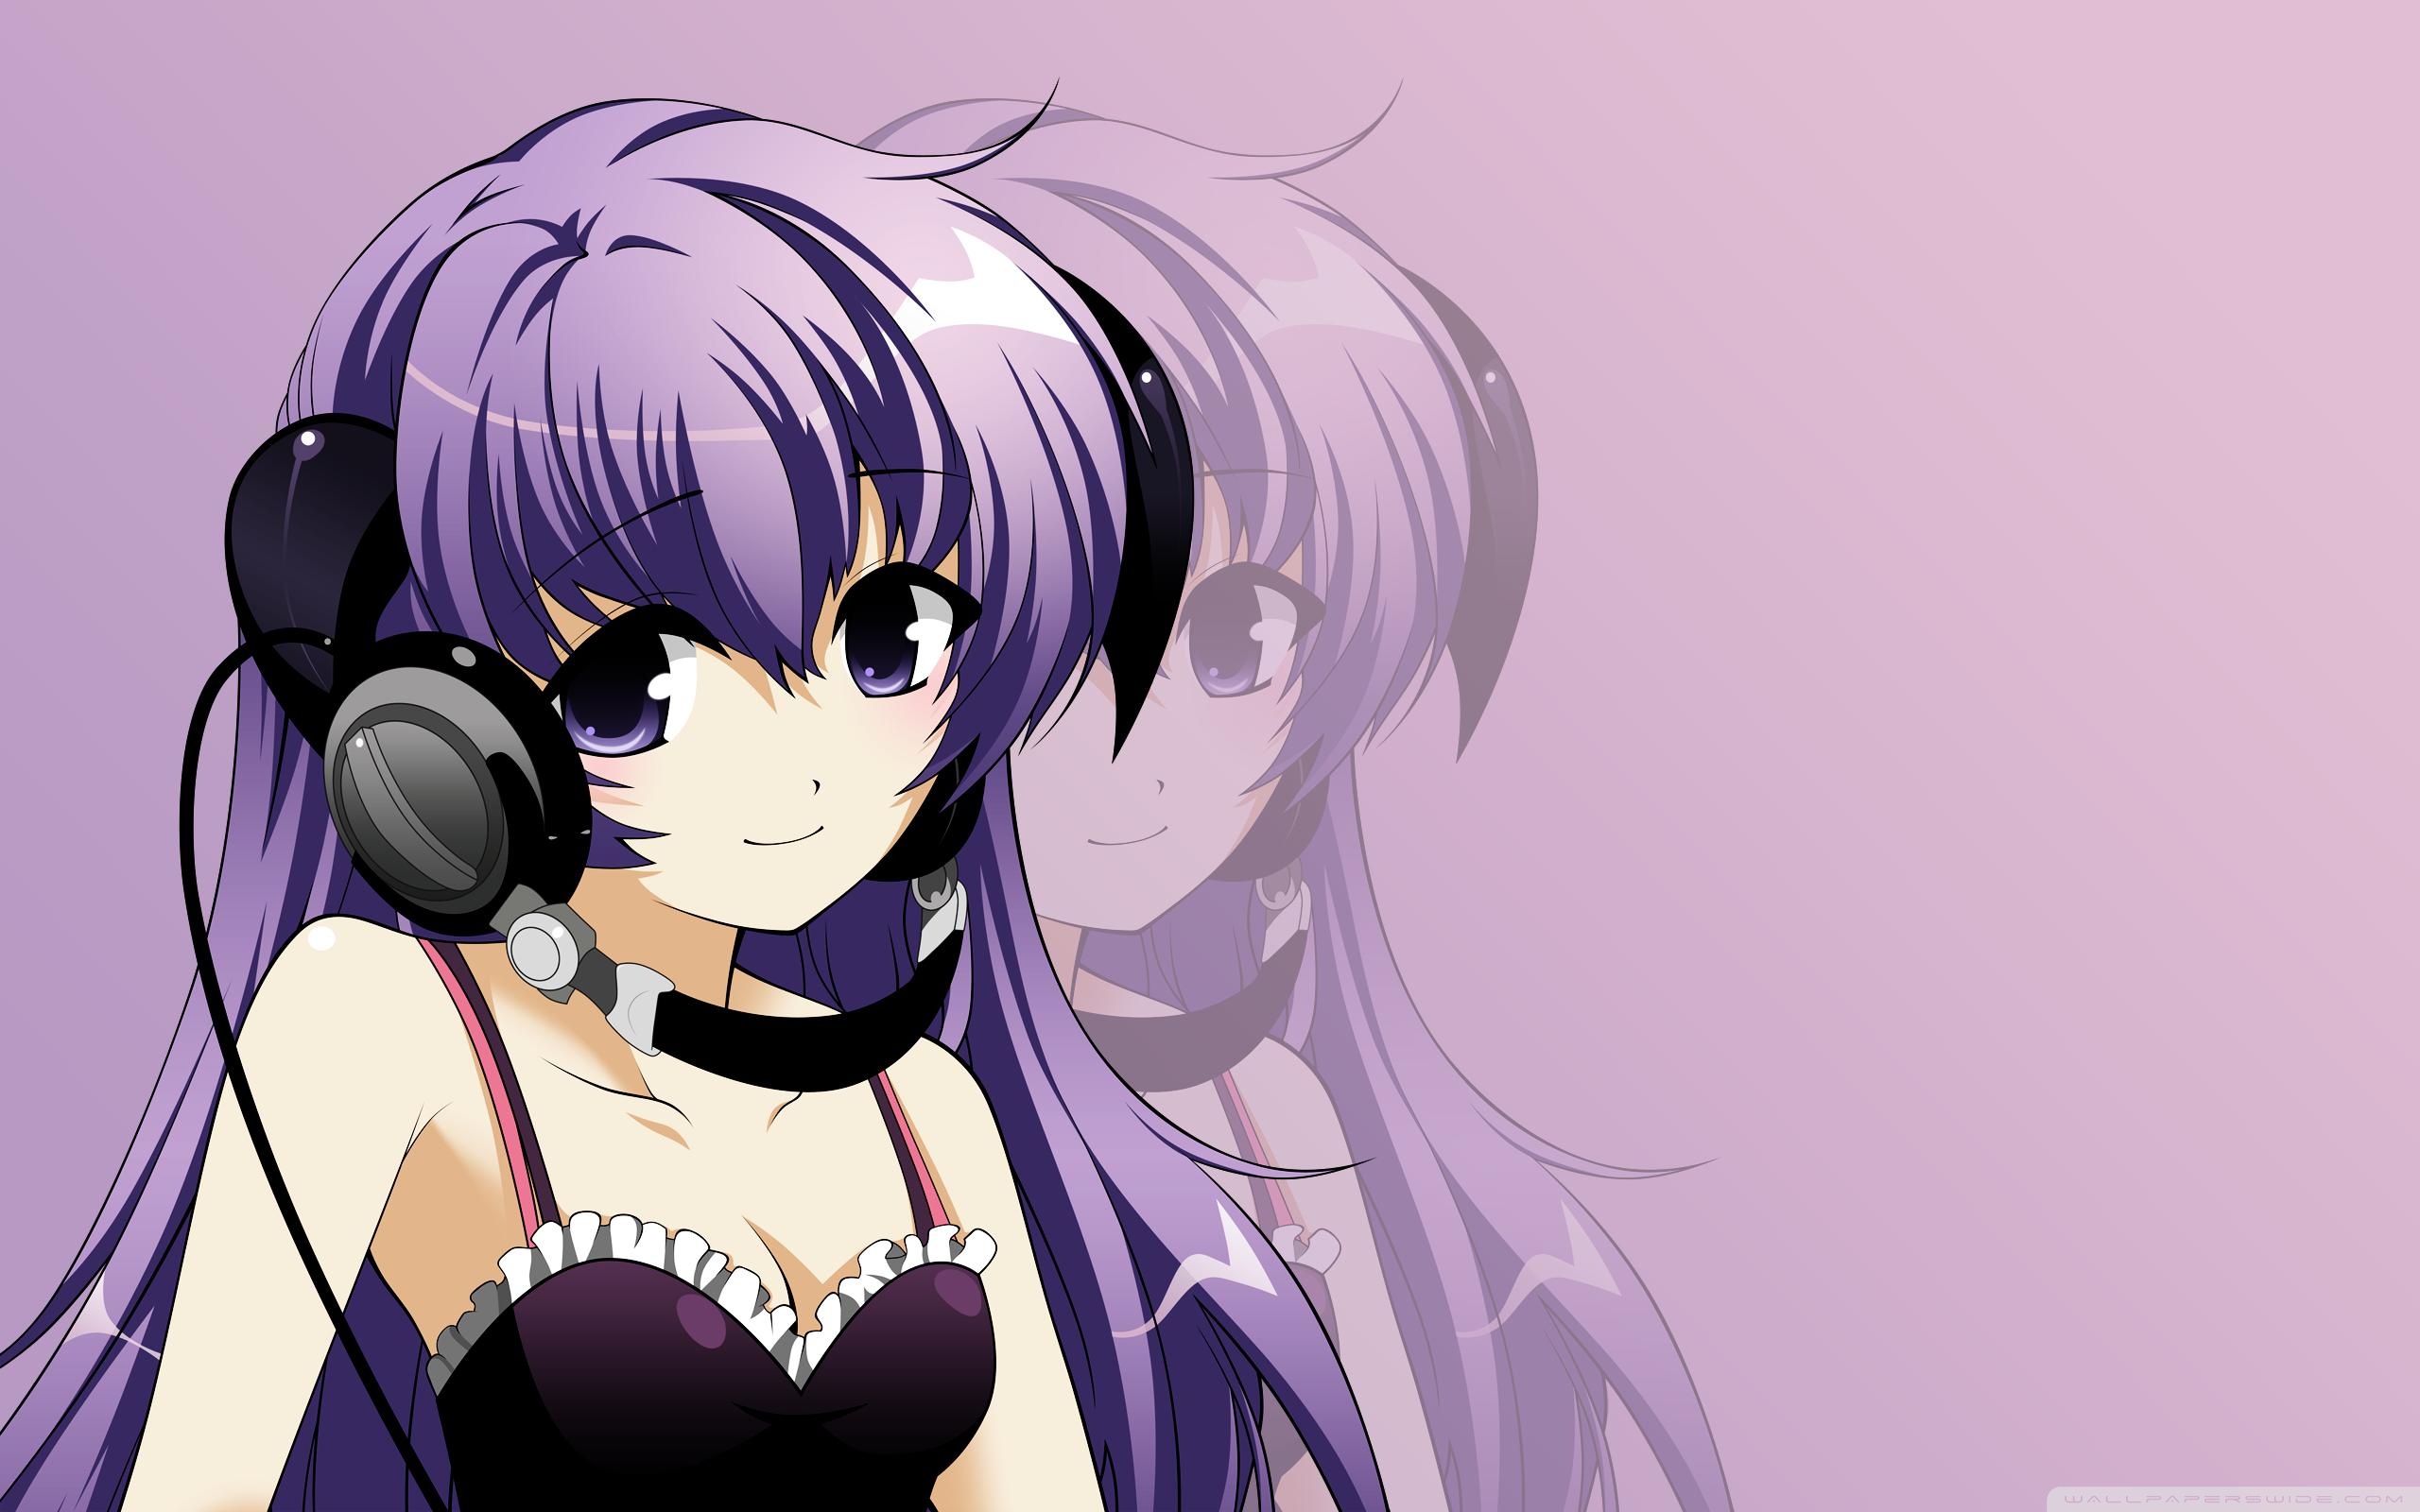 Anime Girl Listening Music Ultra Hd Desktop Background Wallpaper For 4k Uhd Tv Tablet Smartphone